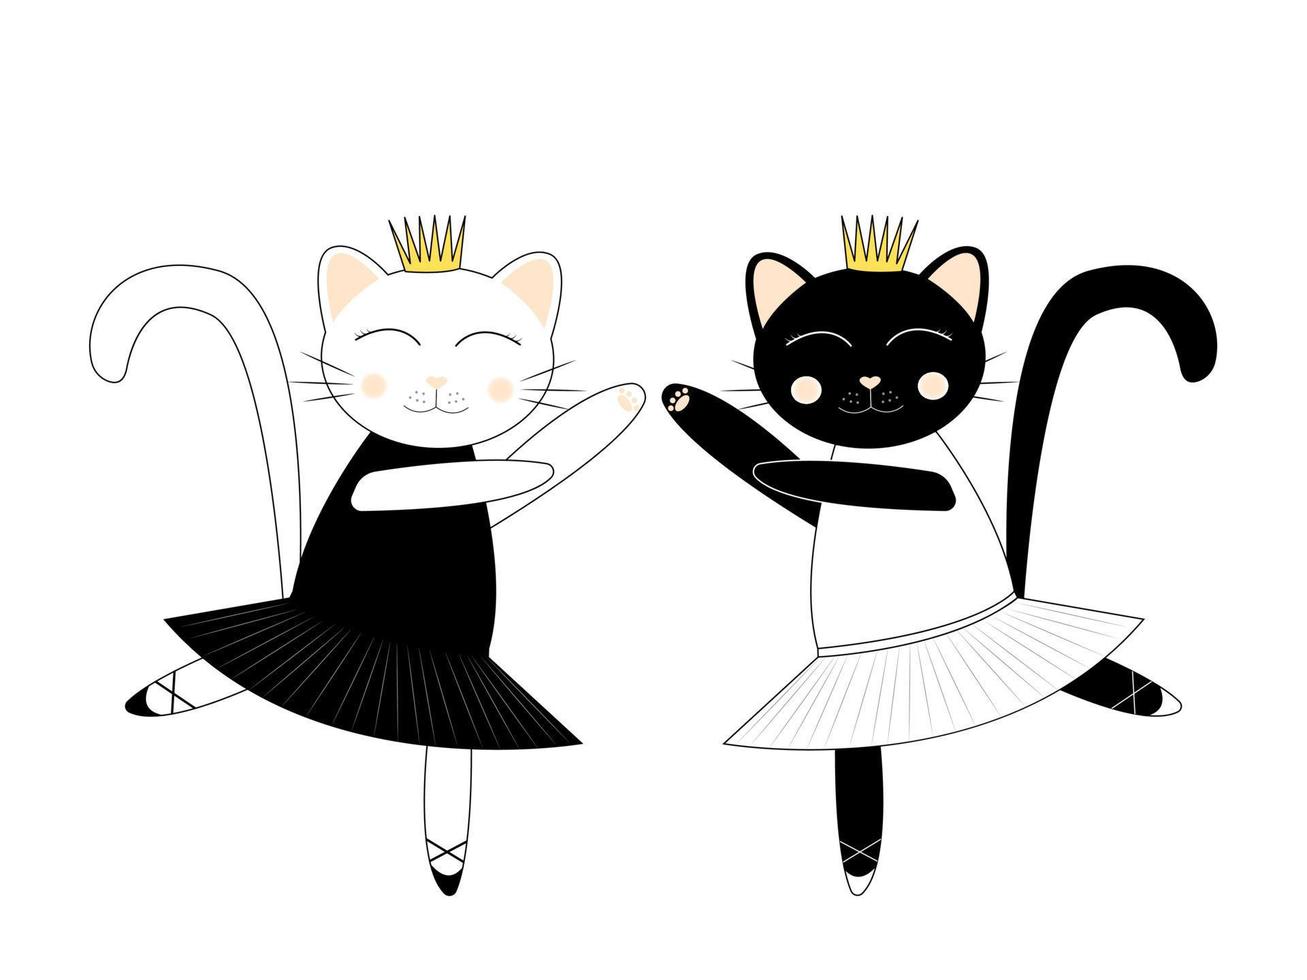 personagens de desenhos animados fofos. gatos bailarina brancos e pretos. balé lago dos cisnes. ilustração vetorial isolada no fundo branco vetor